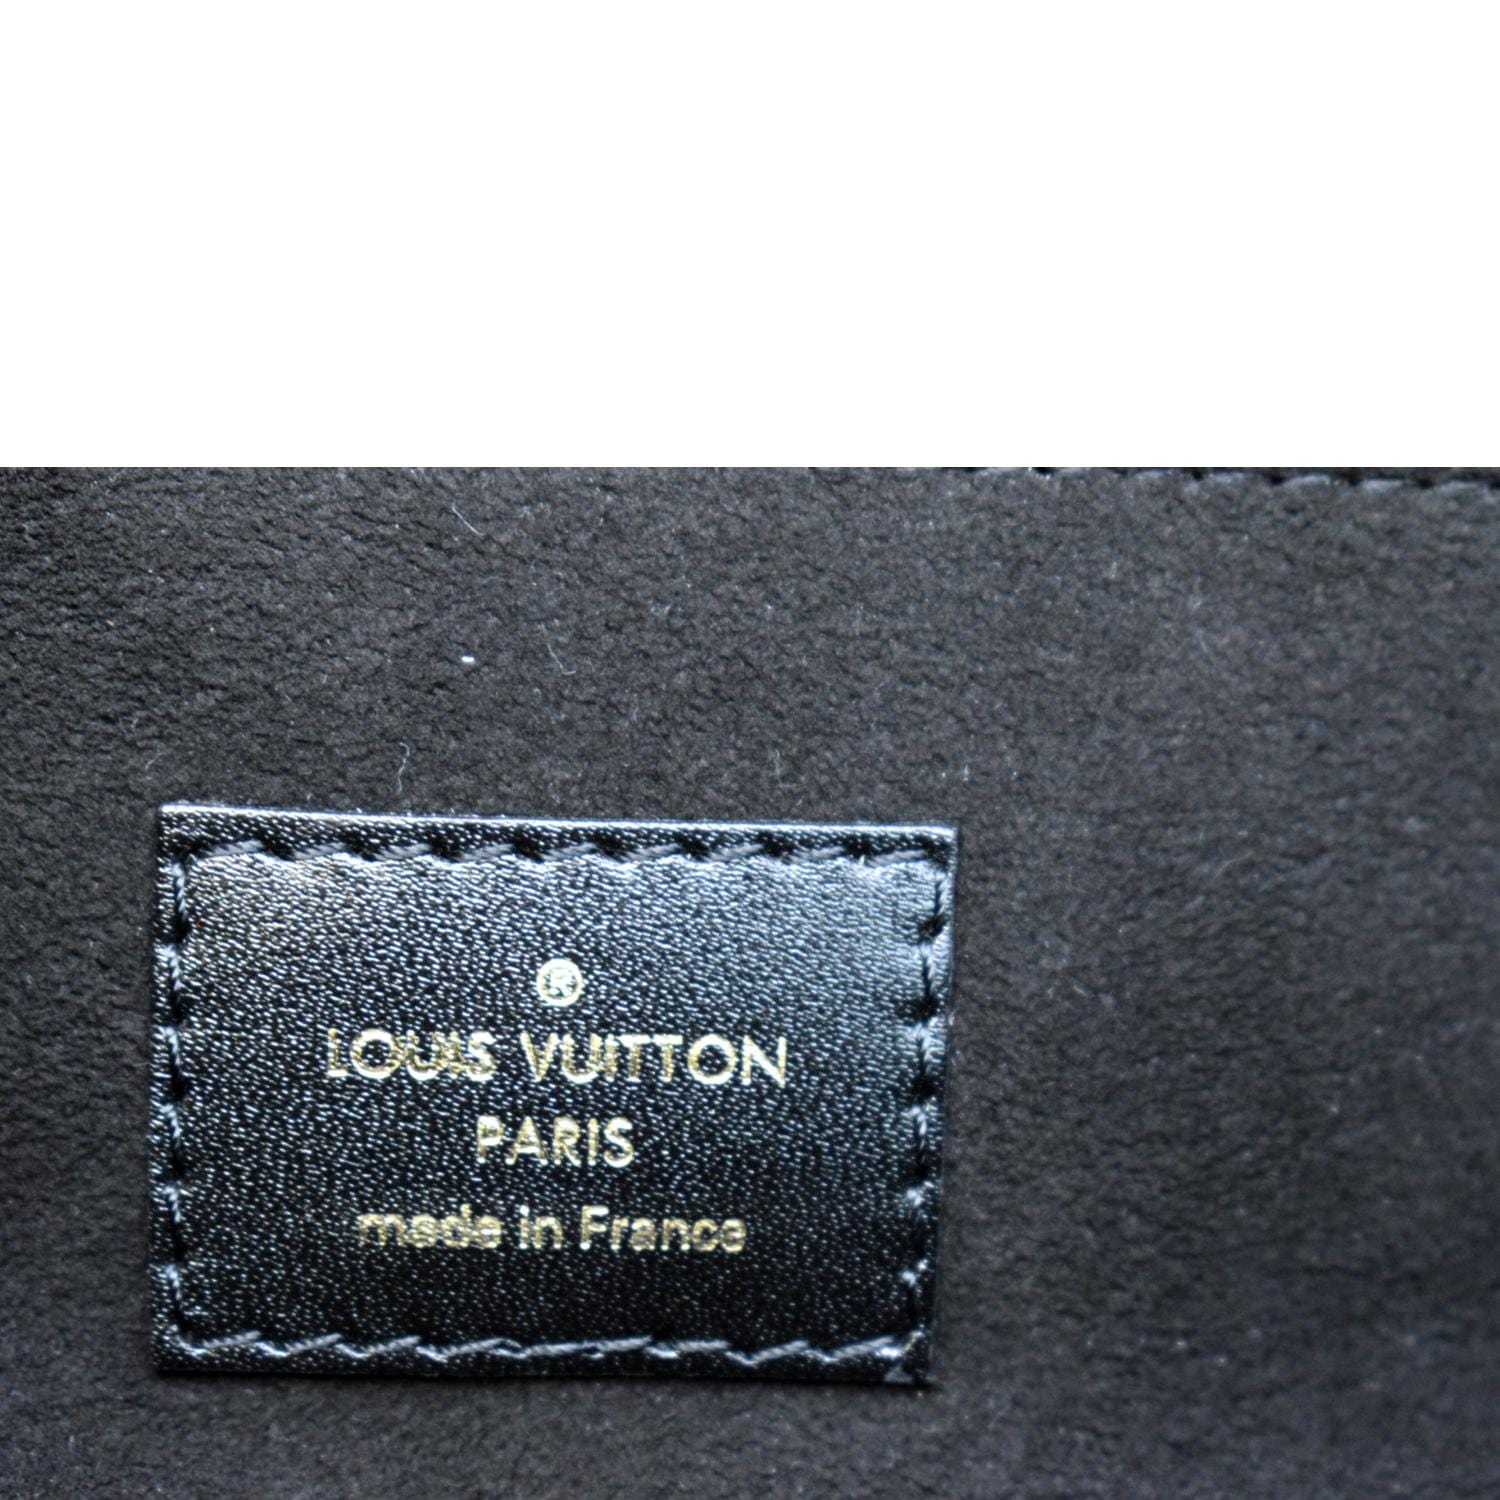 Louis Vuitton Pochette Métis M44876 Brown Monogram Reverse Coated Canvas  Bag